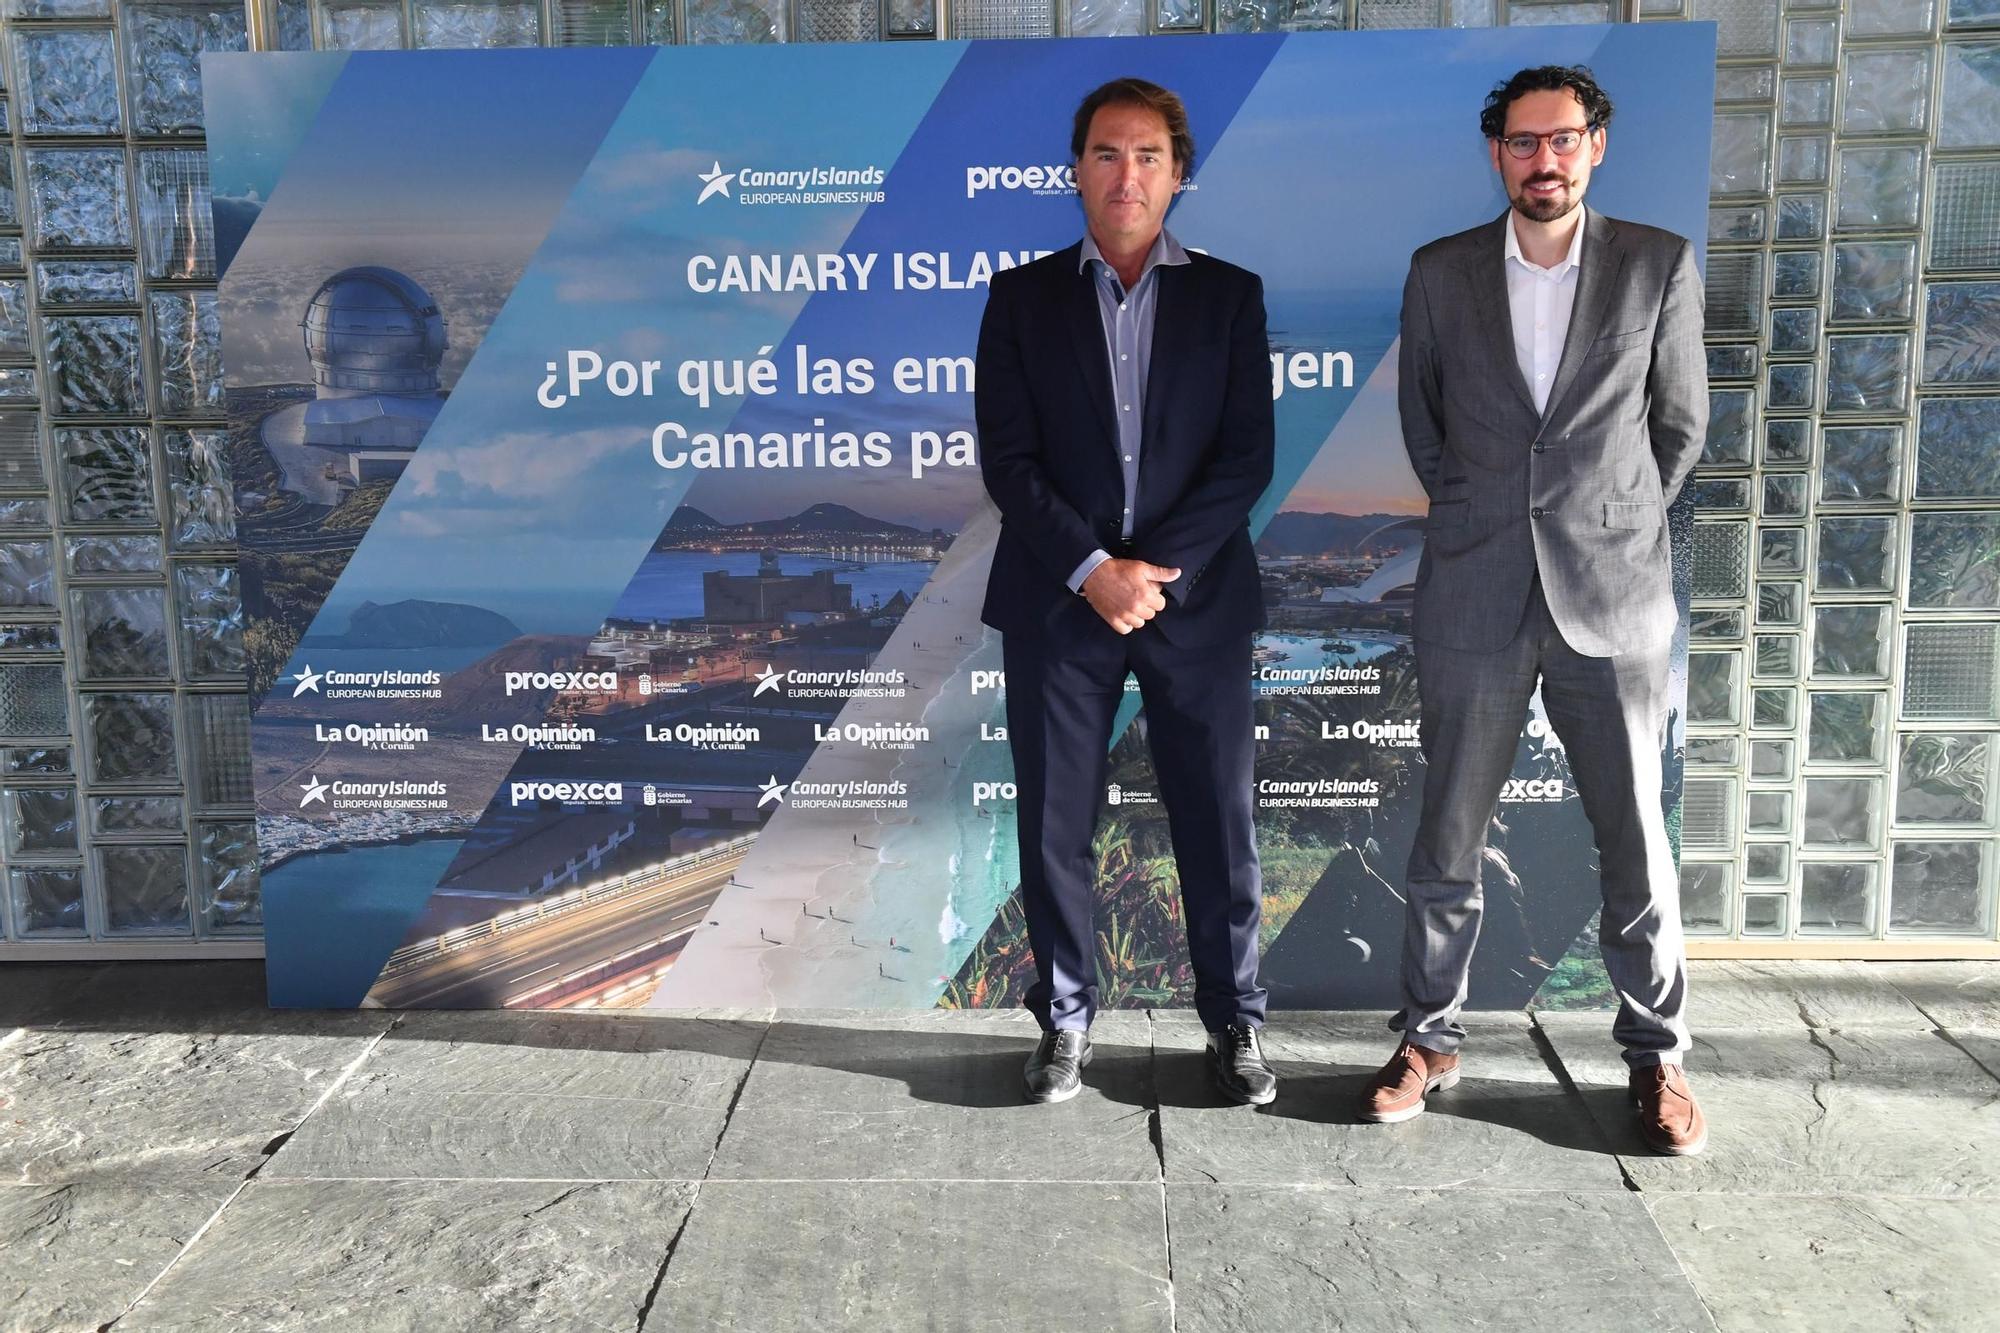 Canary Islands Hub: ¿por qué las empresas eligen Canarias para crecer?